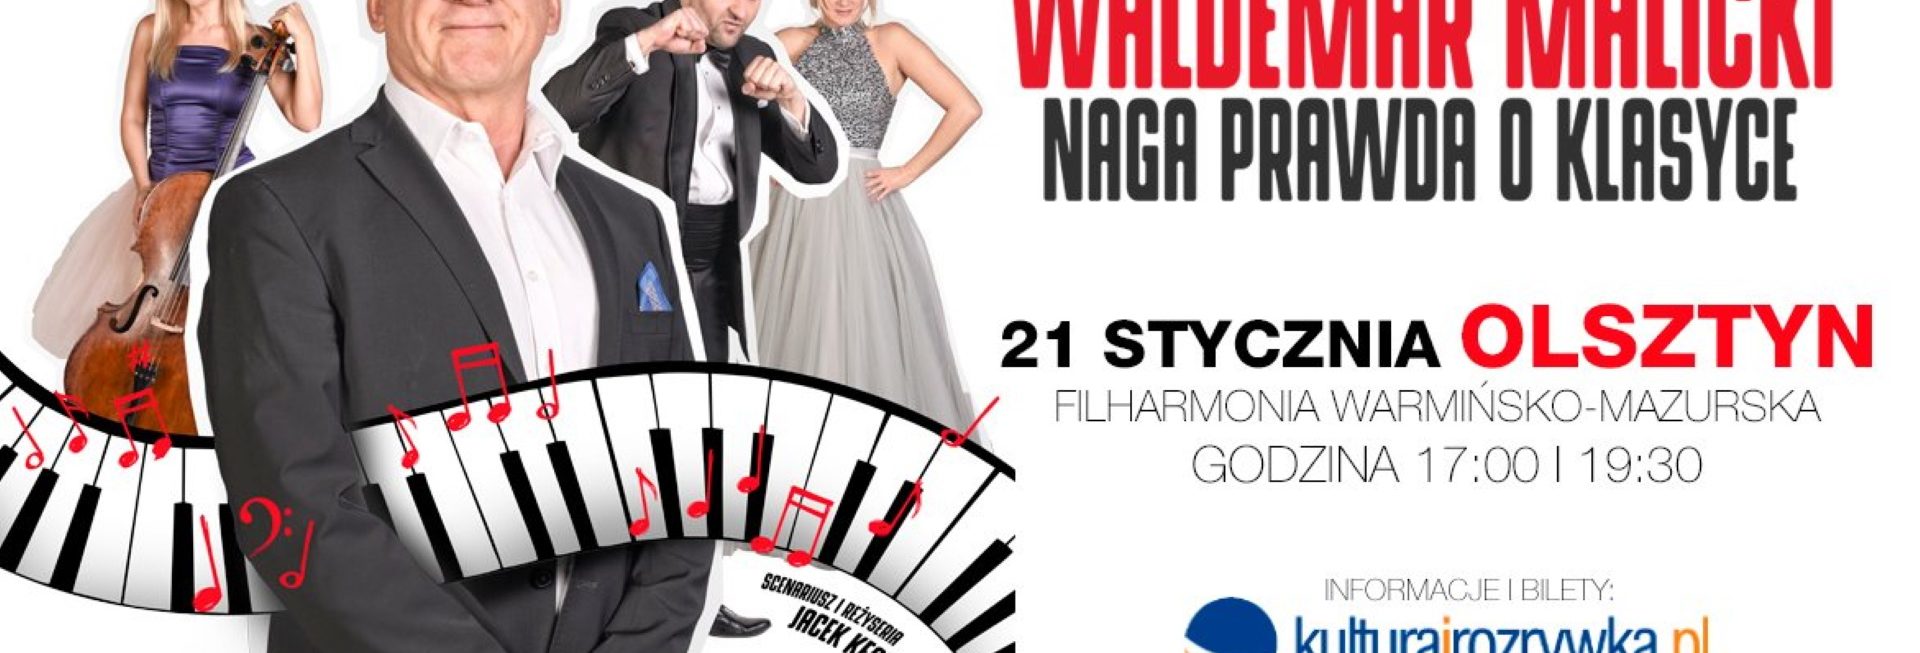 Plakat zapraszający do Olsztyna na Koncert Waldemar Malicki "Naga prawda o klasyce" Filharmonia Olsztyn 2023.